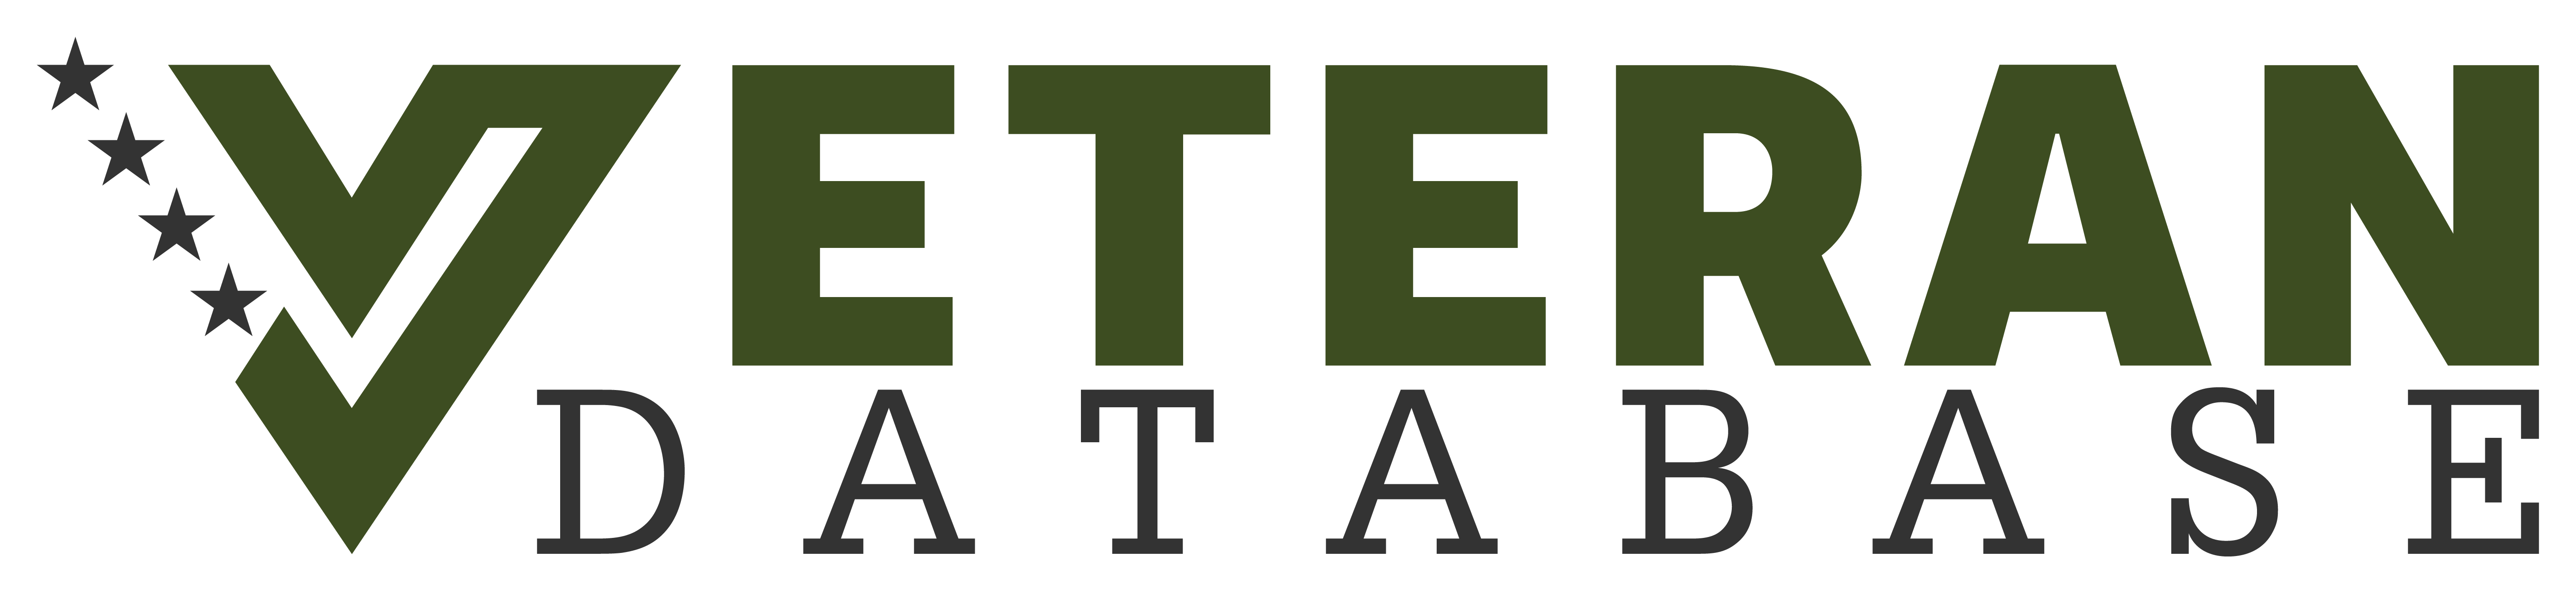 Battlefield Coffee Logo